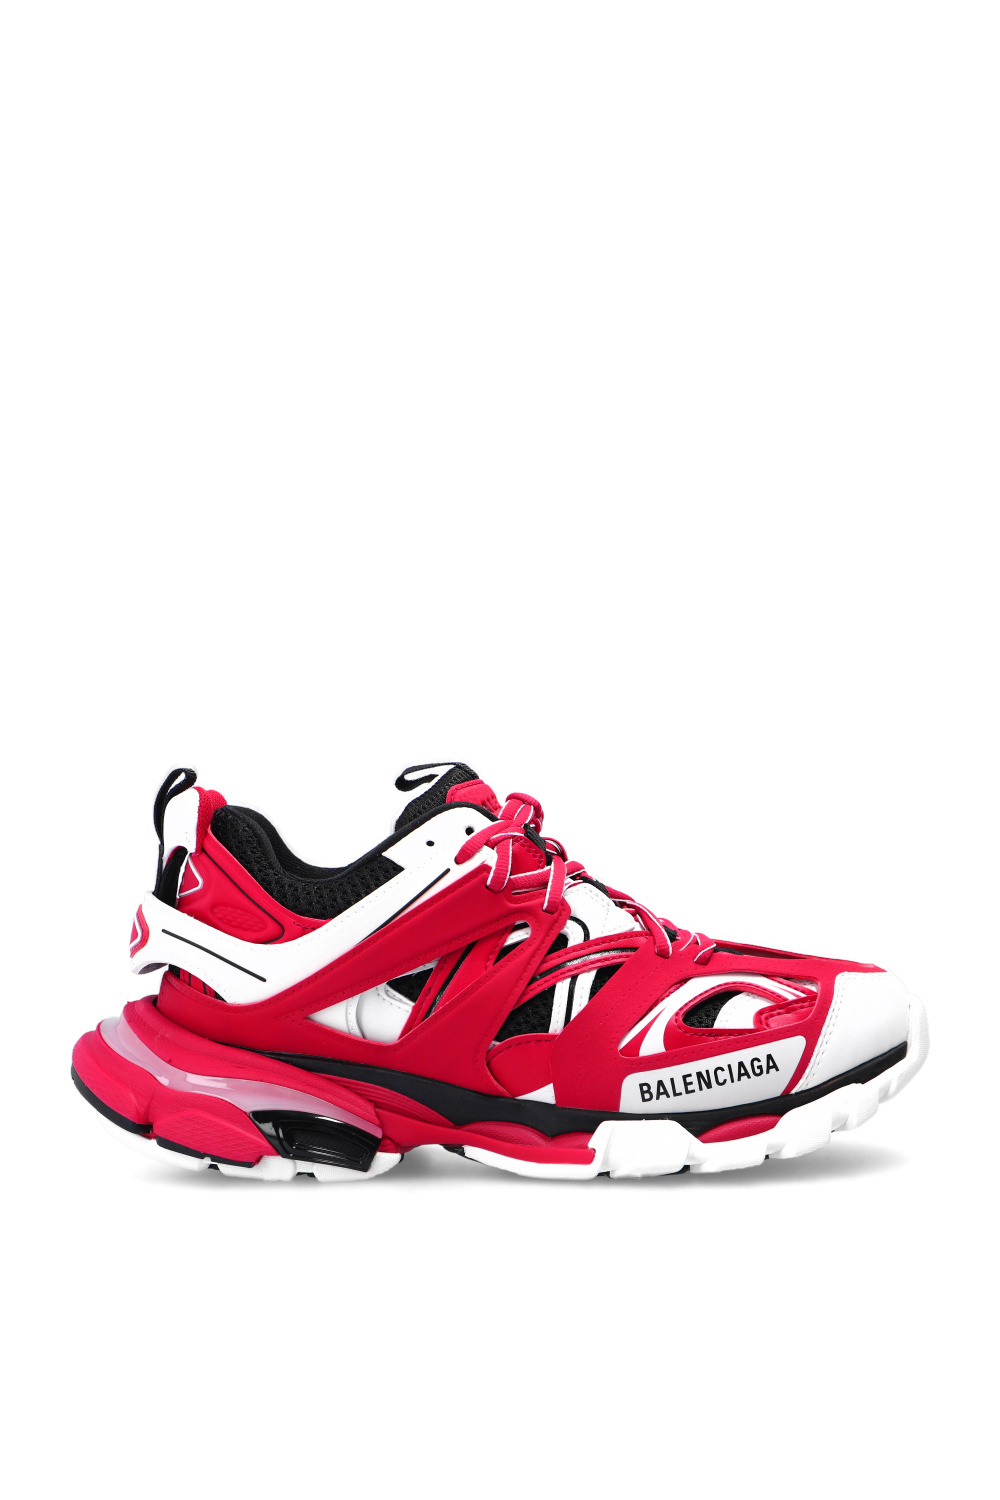 balenciaga track shoes for men  eBay